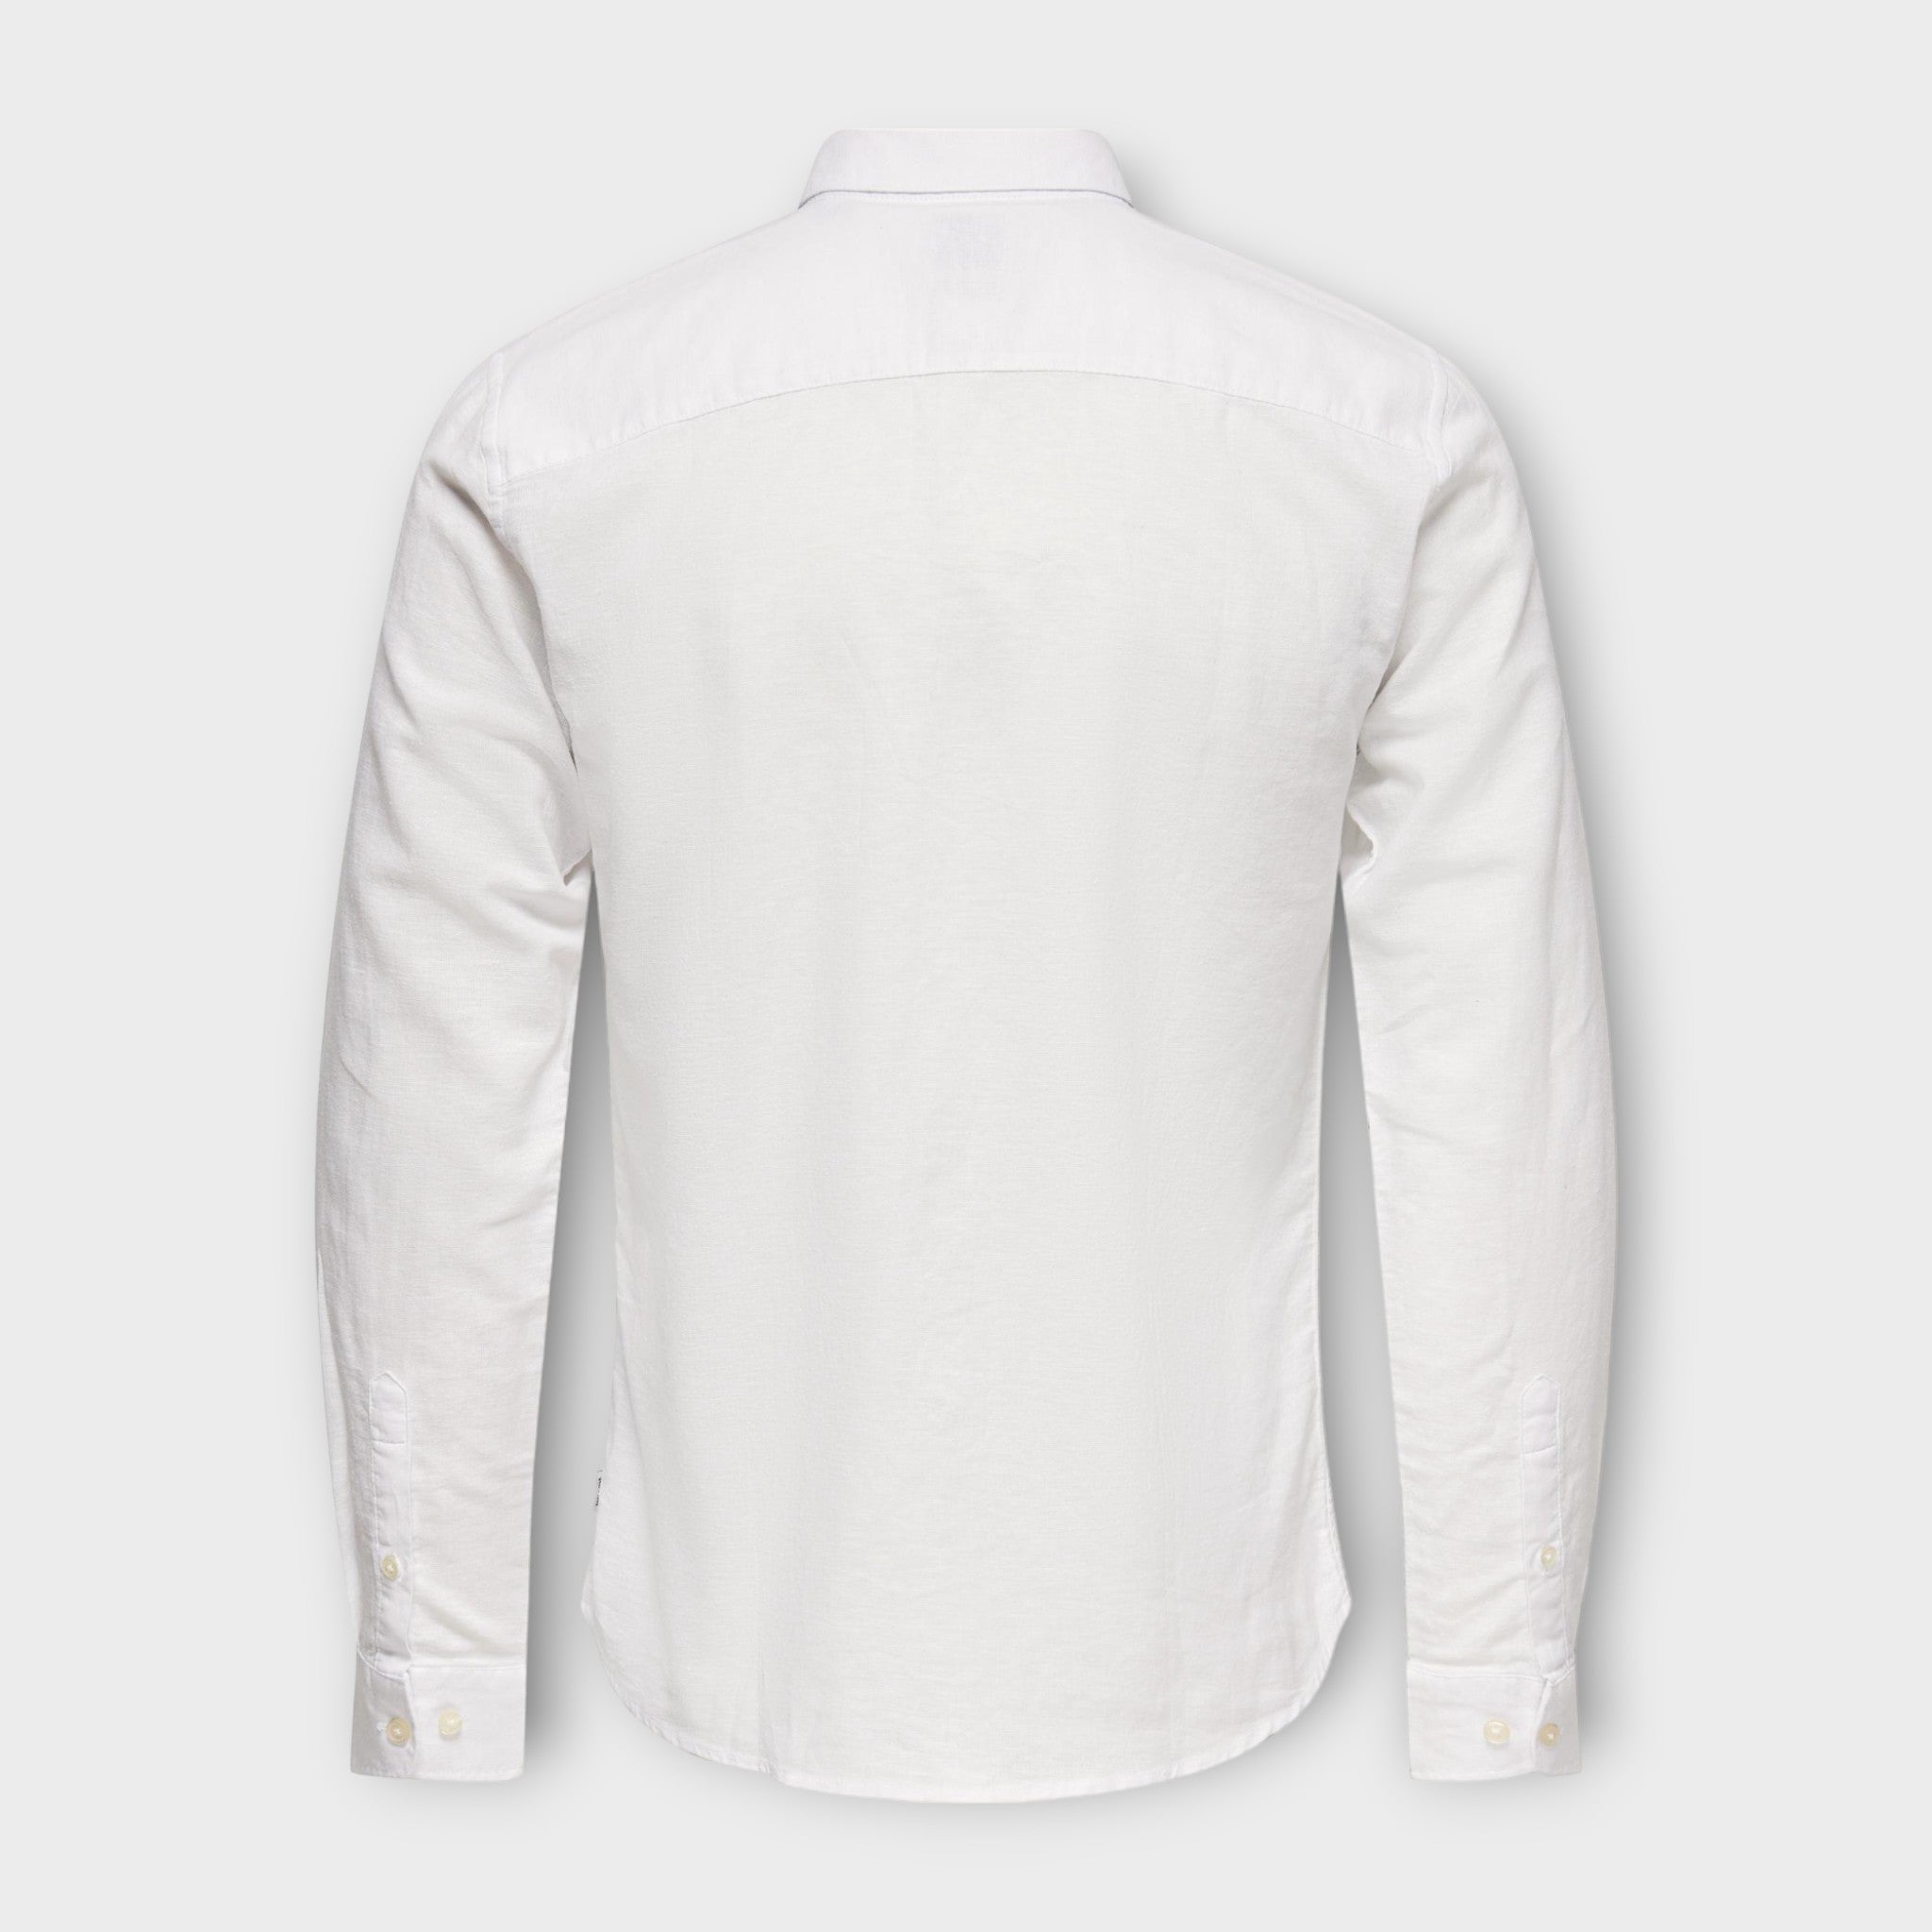 Caiden  LS Solid Linen Shirt  White, Only and Sons hvid langærmet hørskjorte til herre. Her set  bagfra.